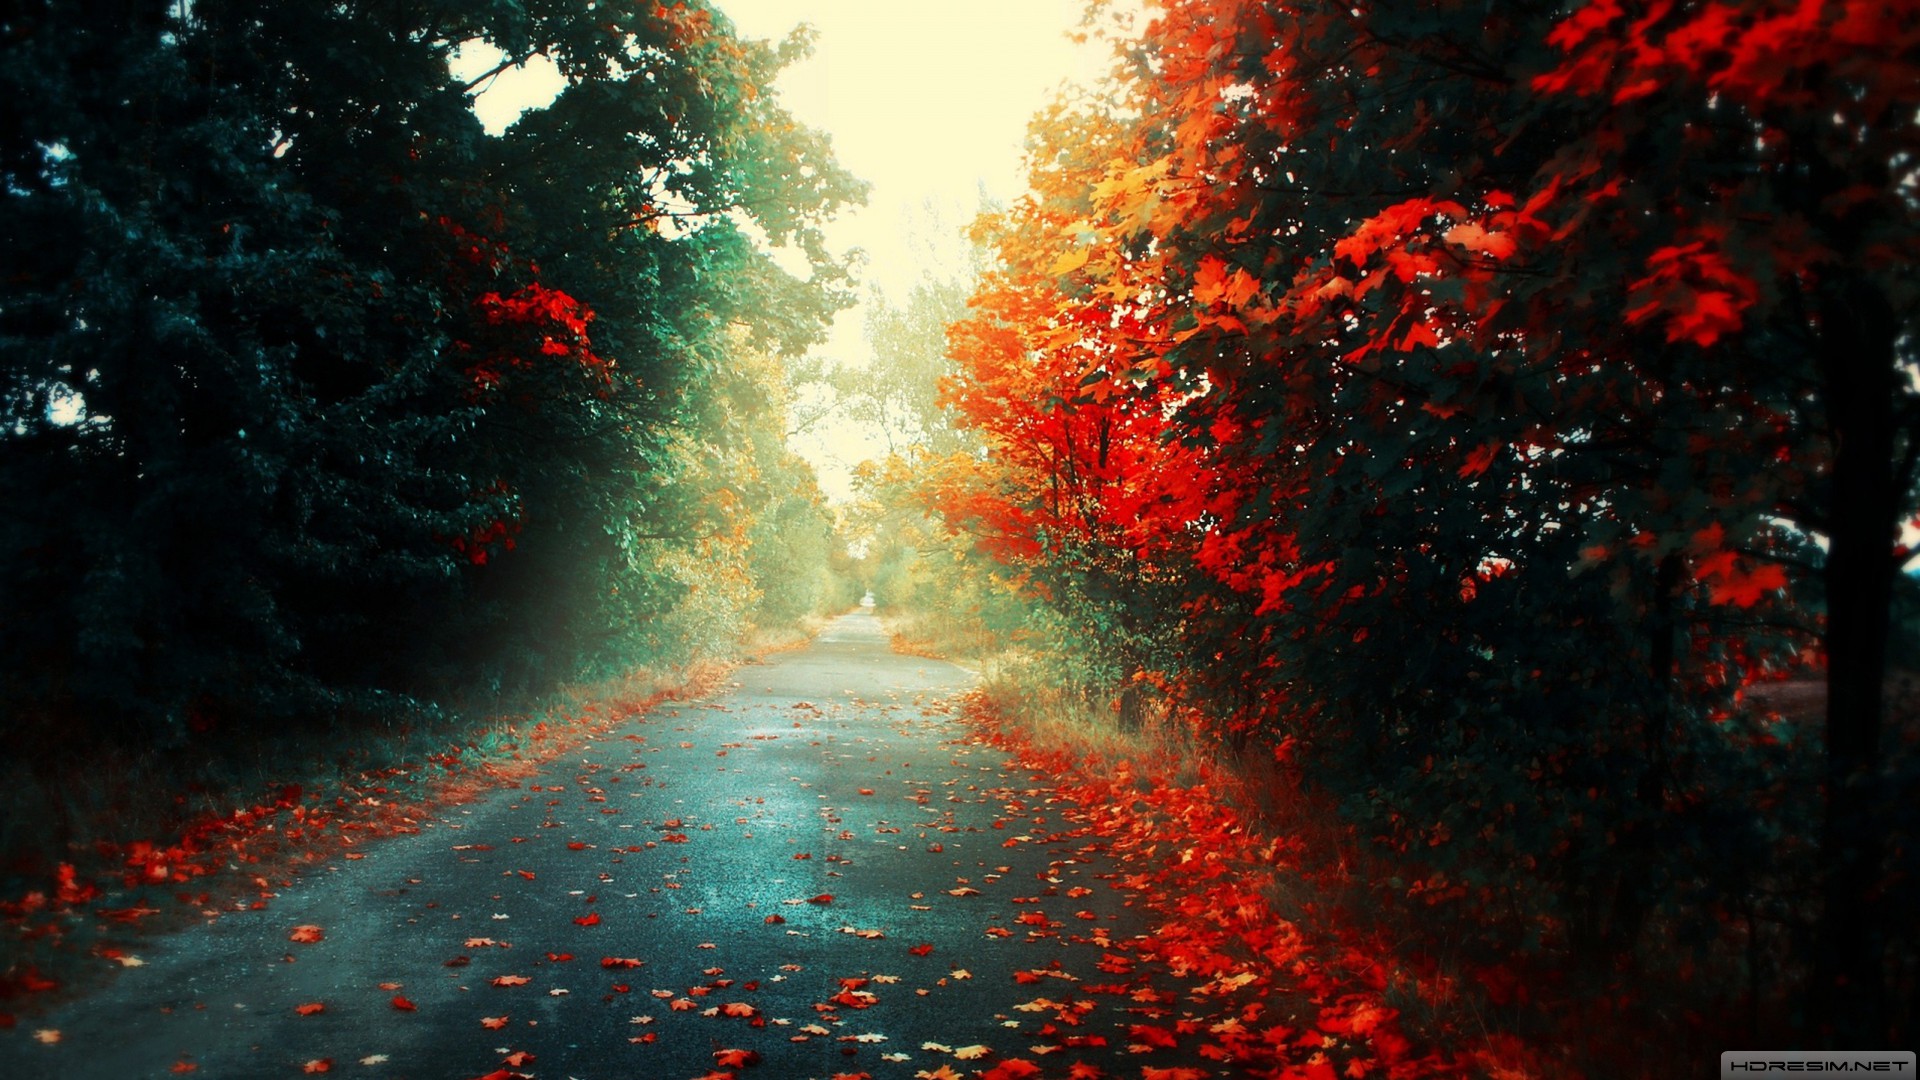 sonbahar,ağaç,yol